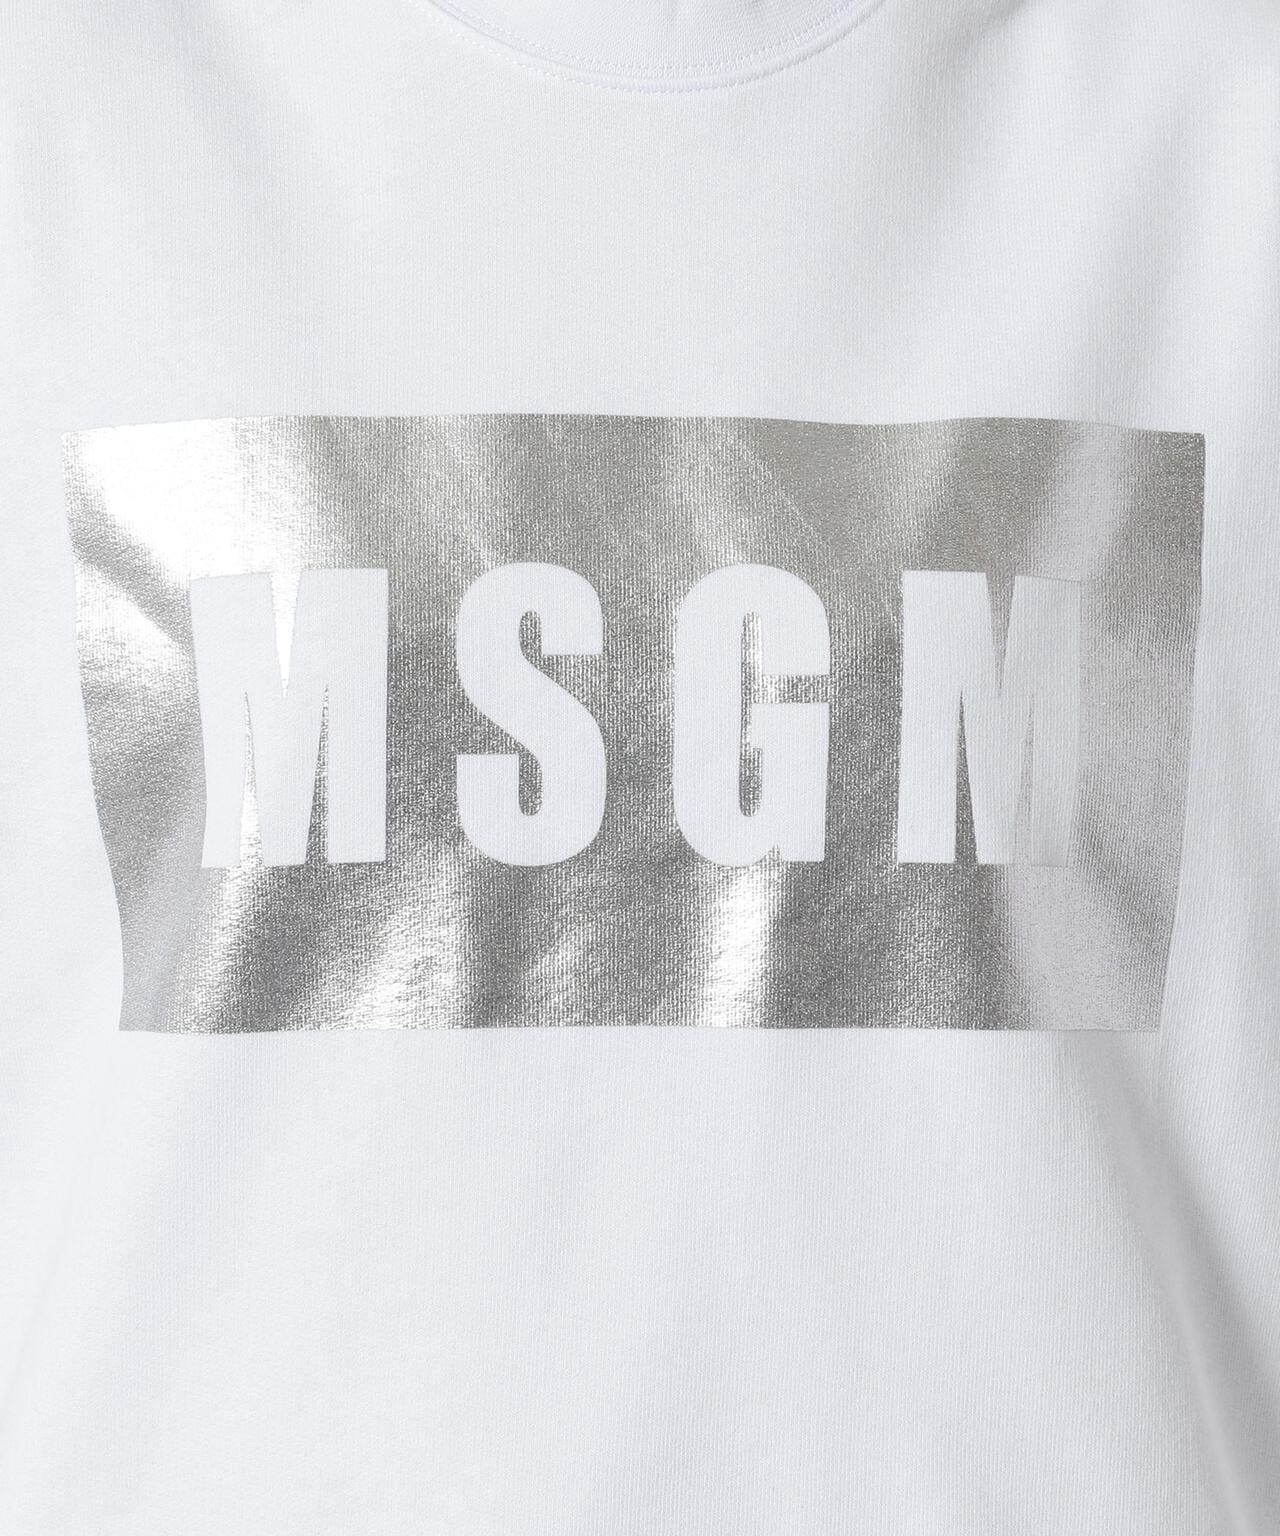 MSGM スウェット白黒Lサイズ